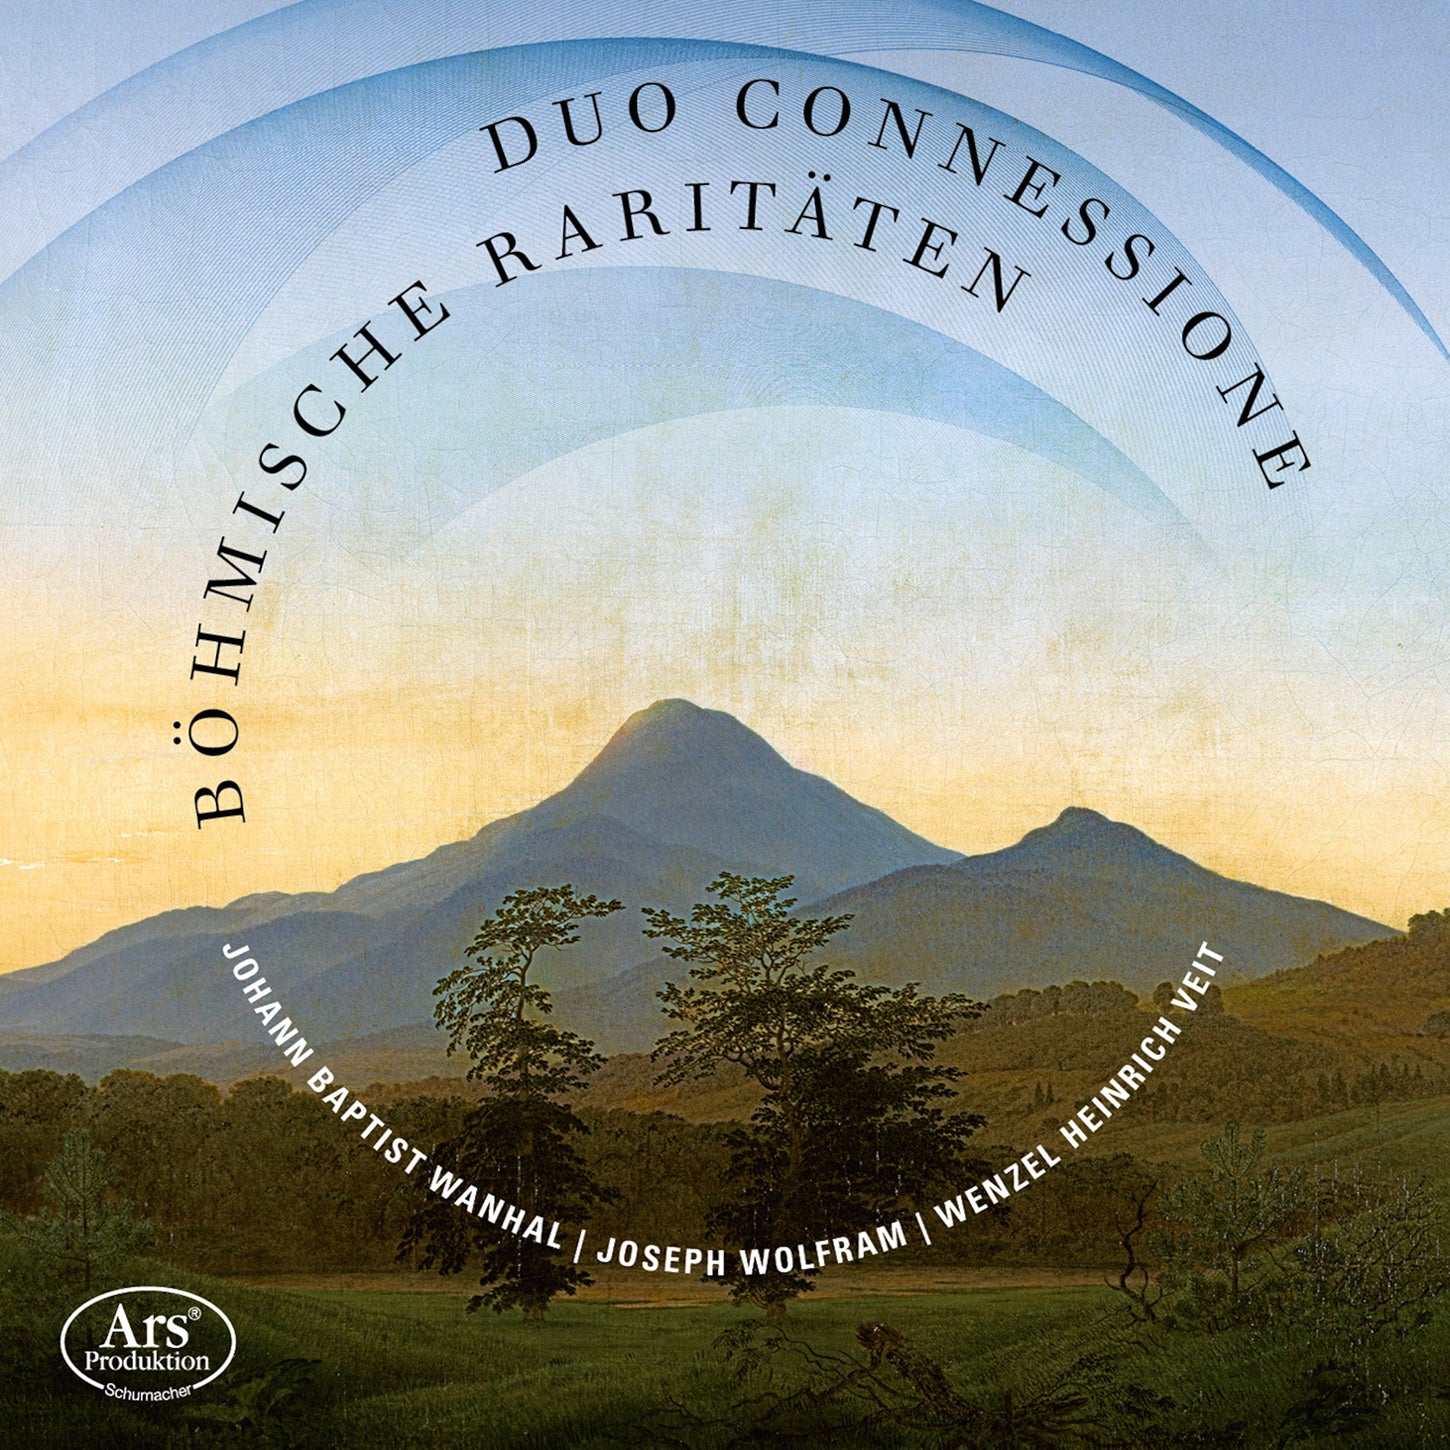 Böhmische Raritäten / Duo Connessione